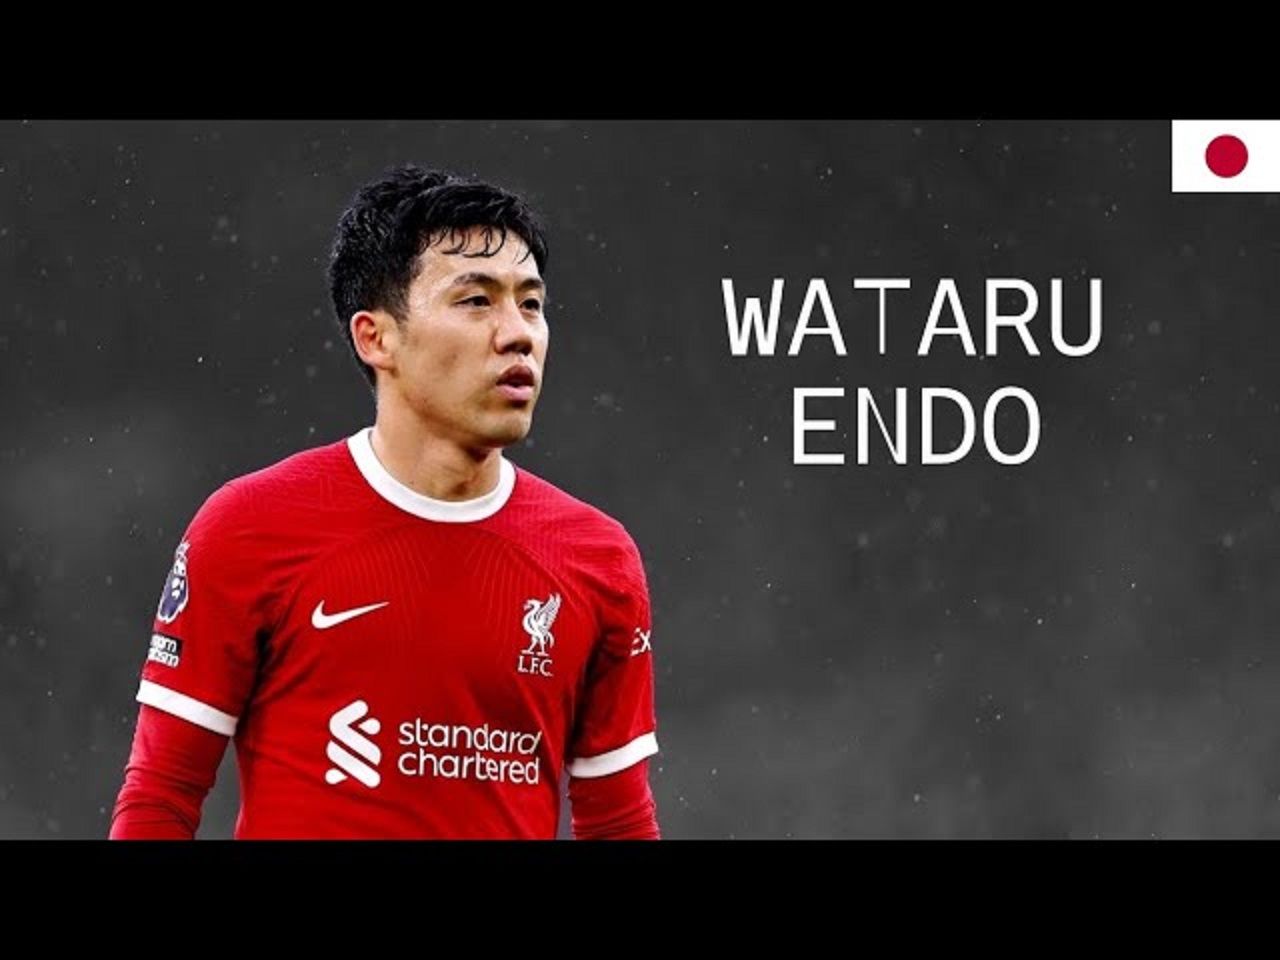 Kehebatan Wataru Endo, Pilar Utama Liverpool yang Mendominasi Lapangan